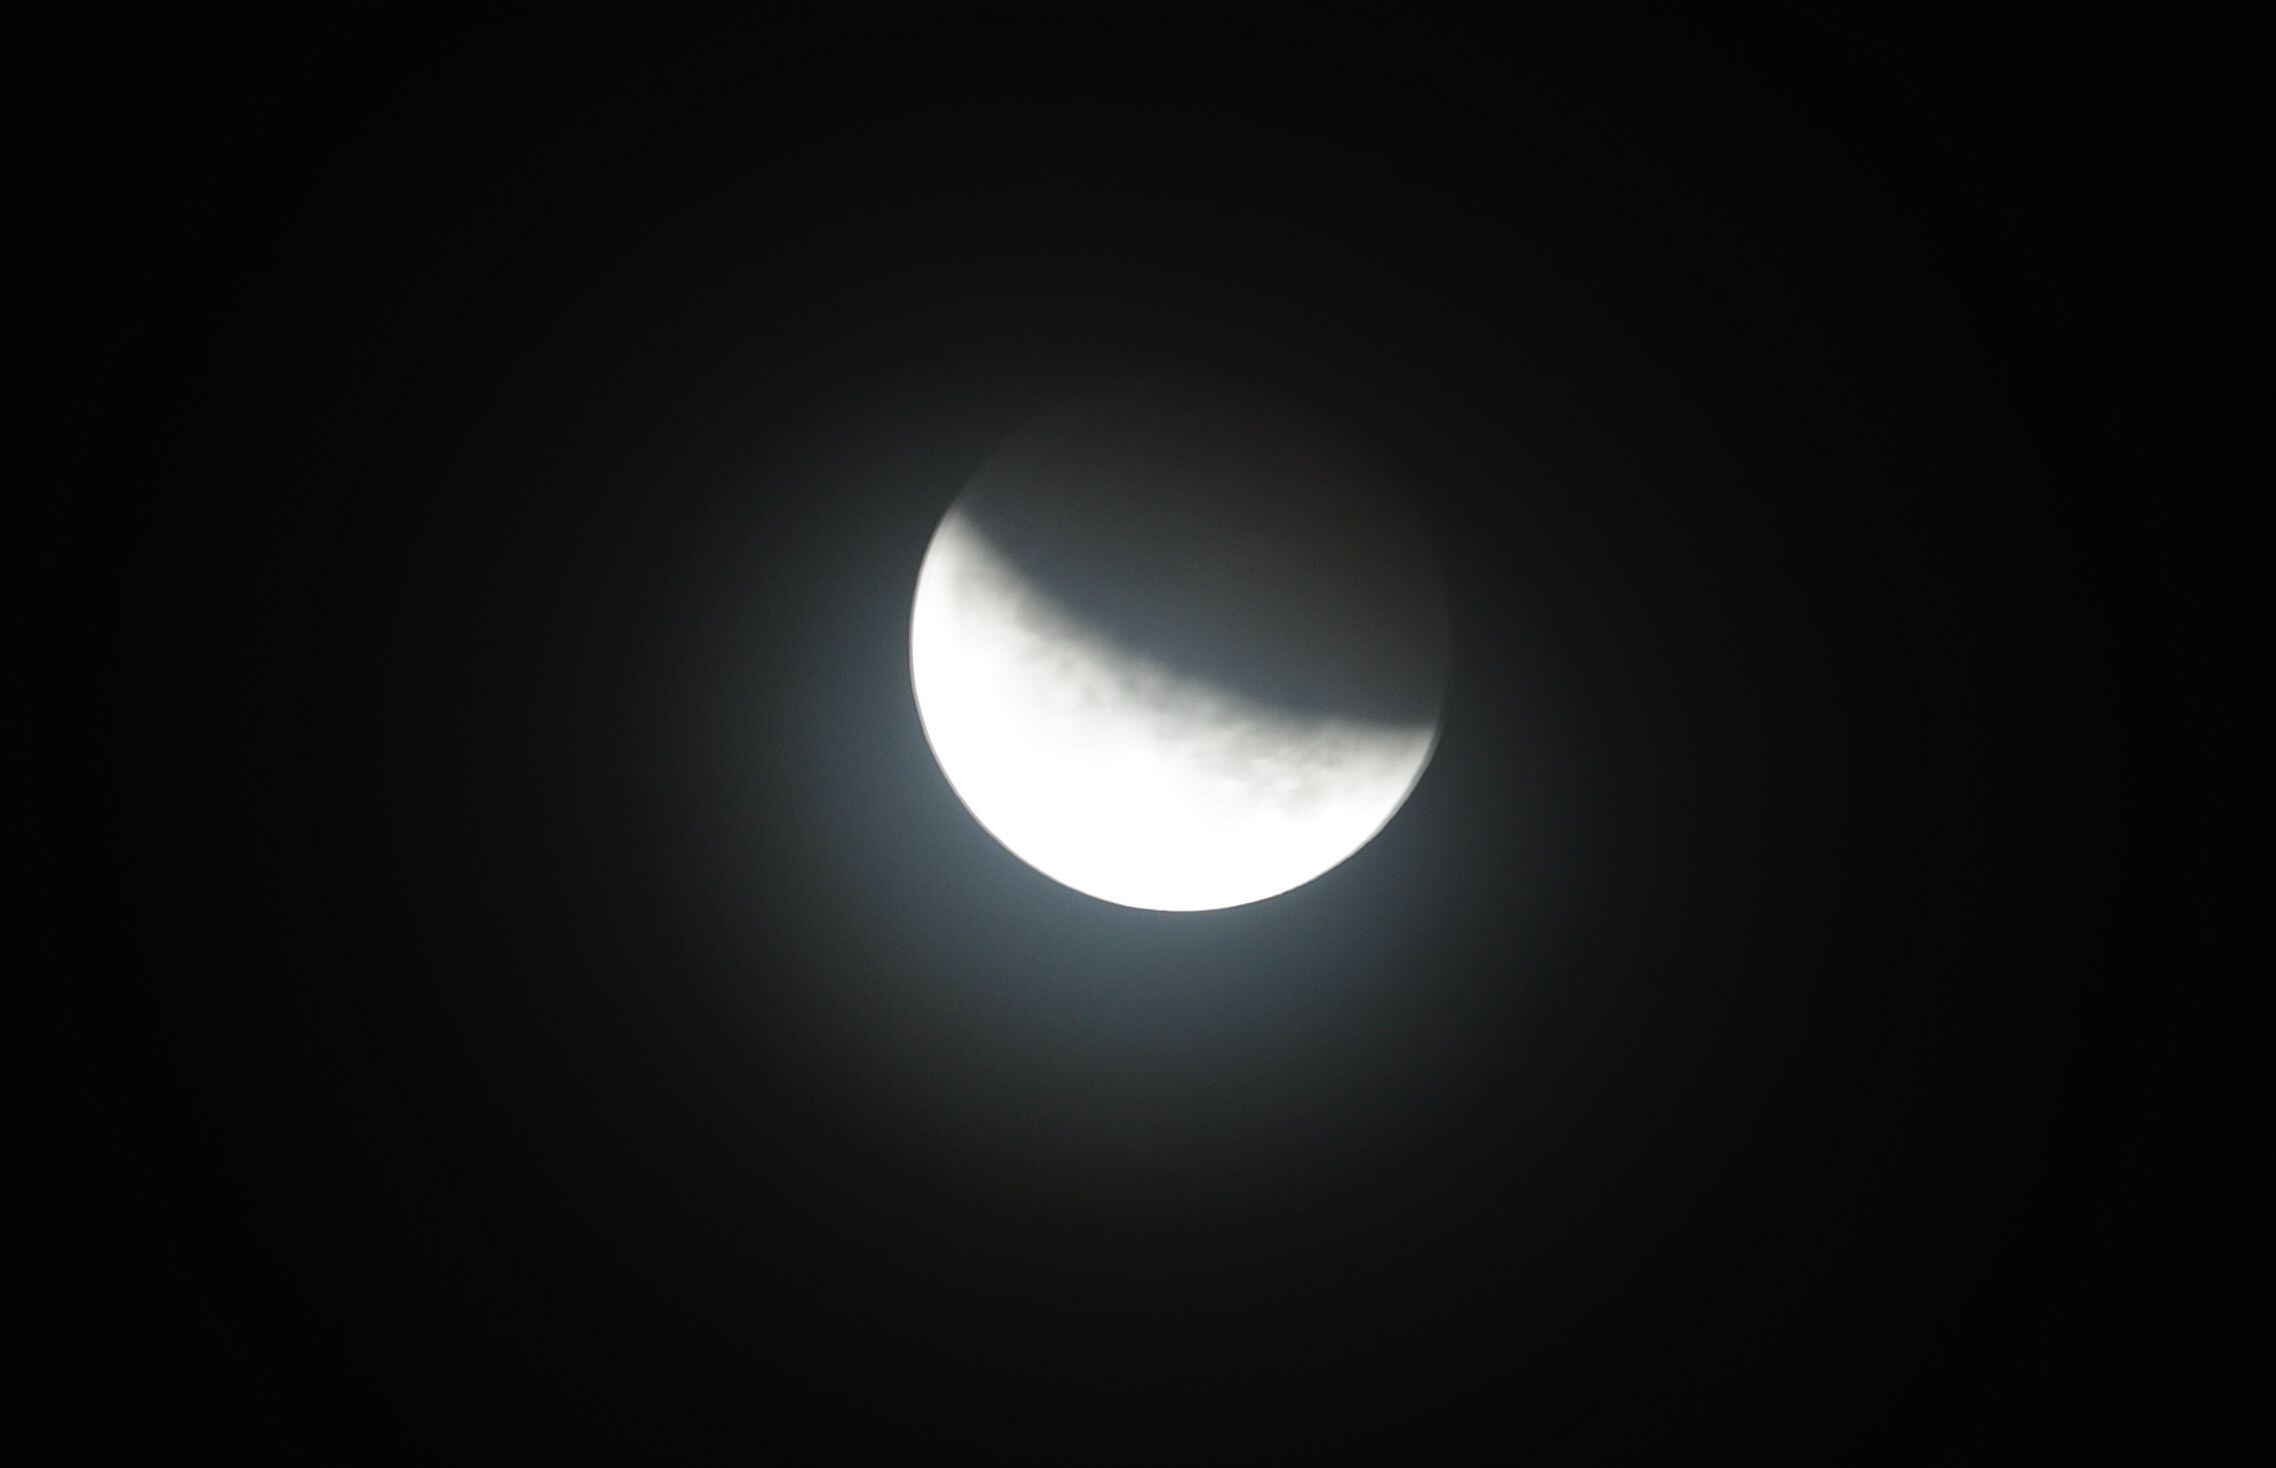 El próximo eclipse lunar del año será uno parcial. EFE/EPA/ADI WEDA
